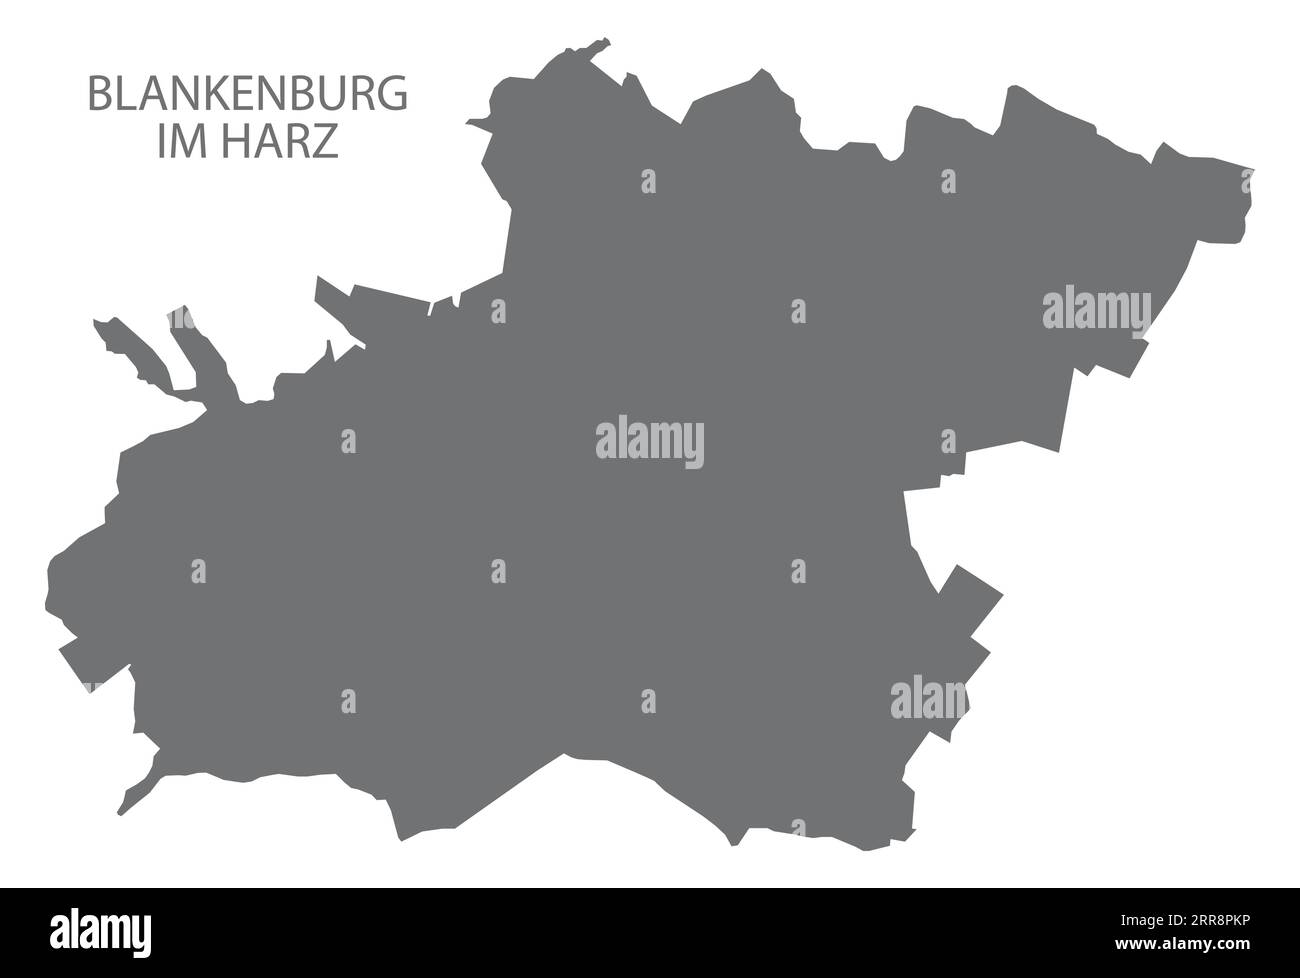 Blankenburg im Harz Deutsche Stadtkarte graue Illustration Silhouettenform Stock Vektor